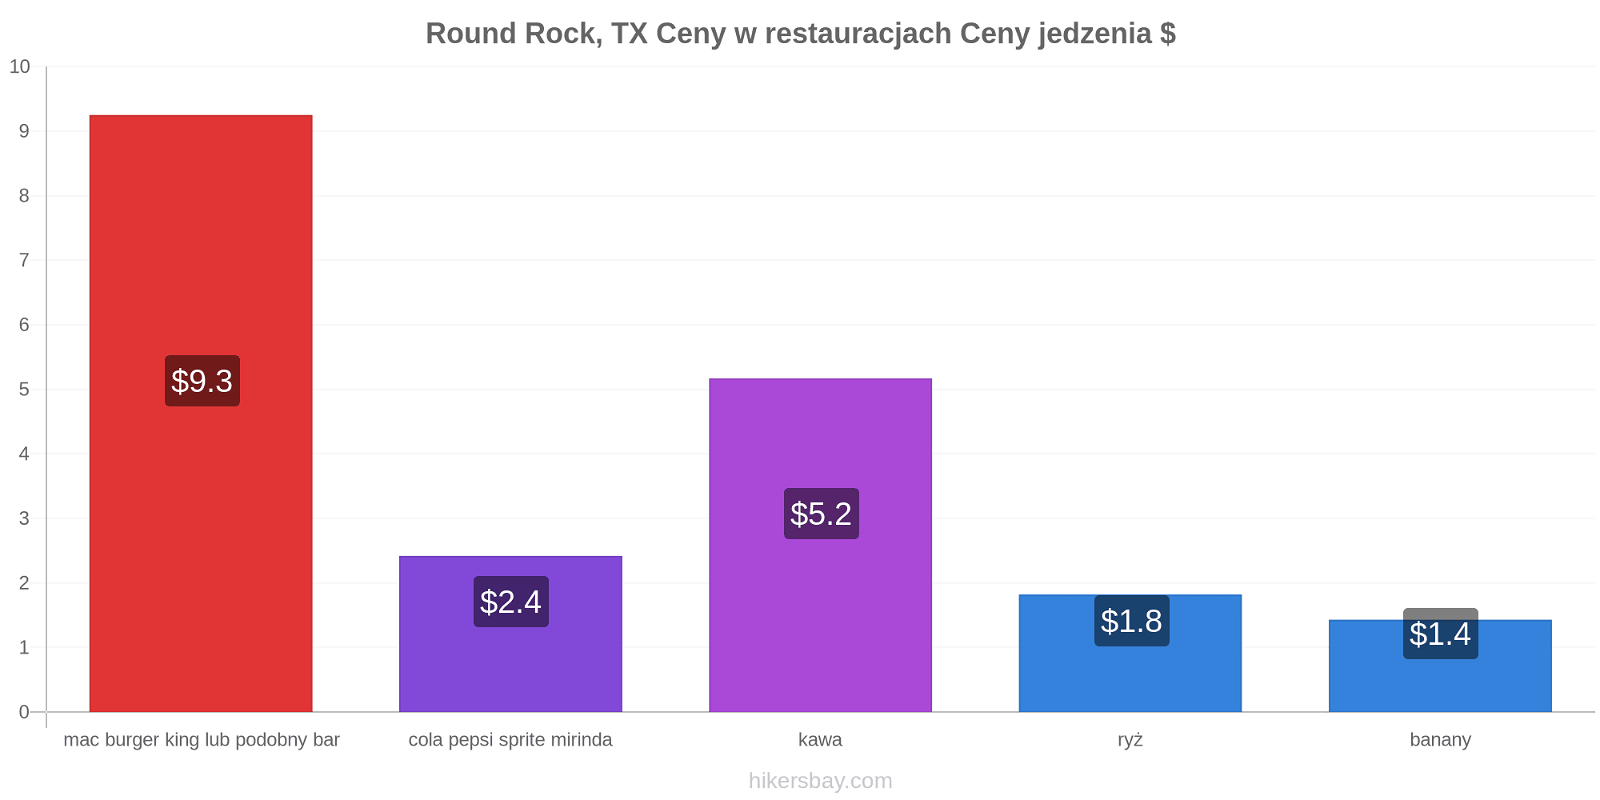 Round Rock, TX zmiany cen hikersbay.com